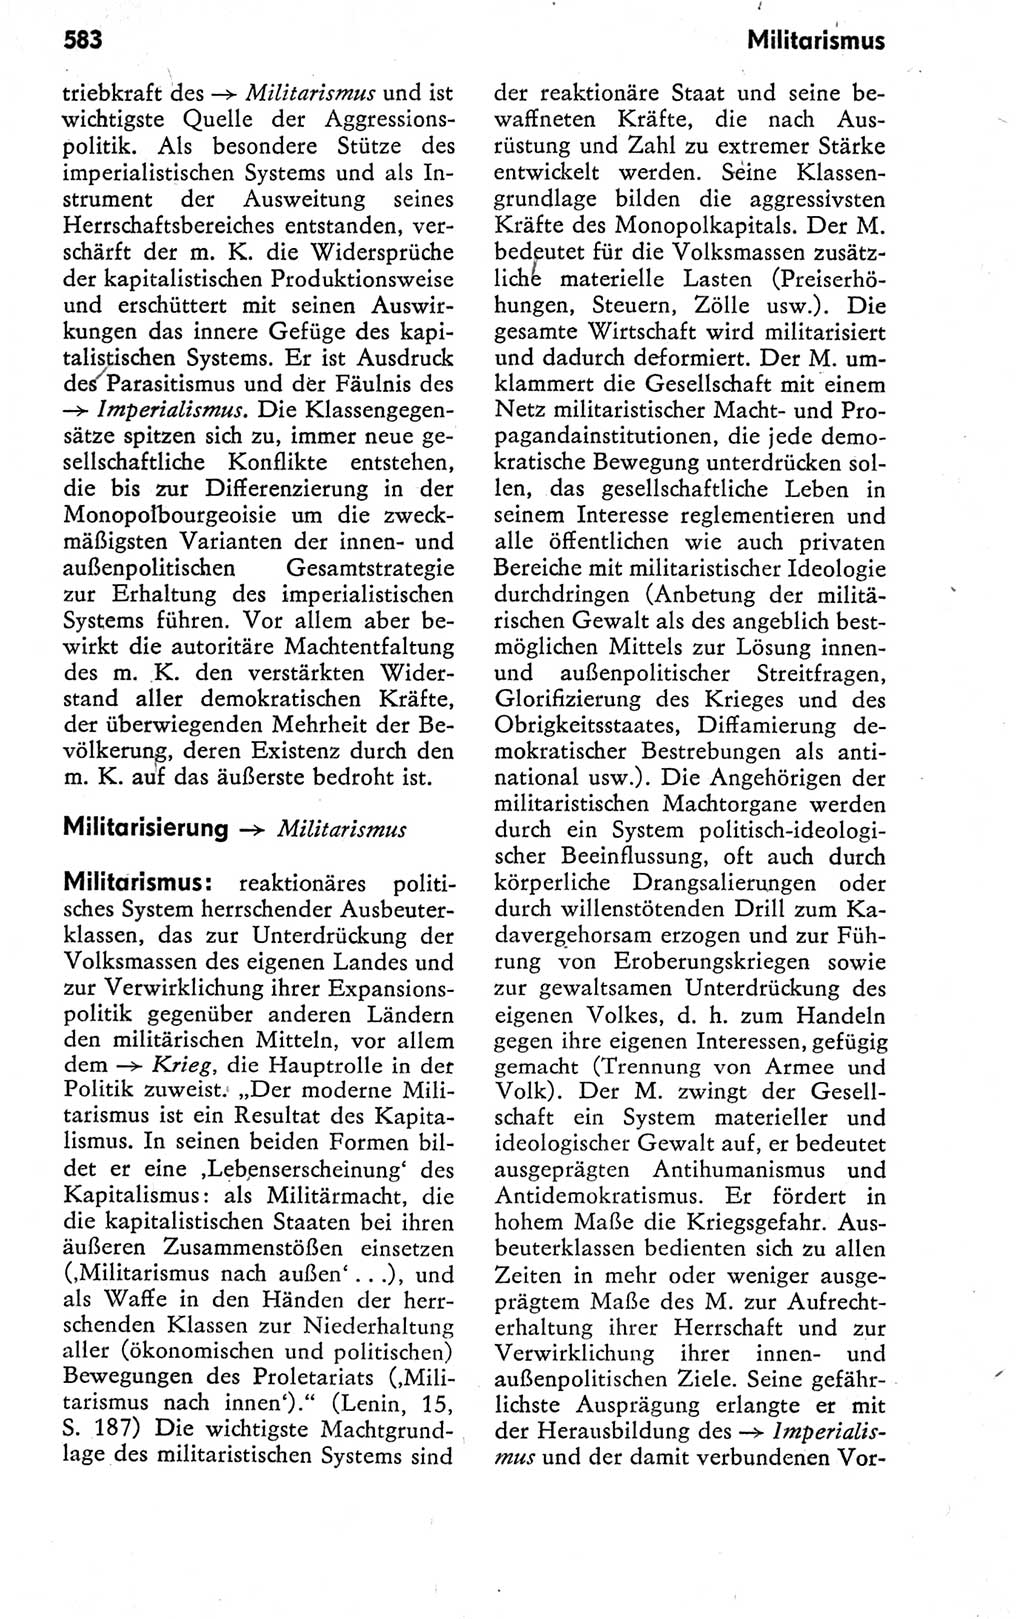 Kleines politisches Wörterbuch [Deutsche Demokratische Republik (DDR)] 1978, Seite 583 (Kl. pol. Wb. DDR 1978, S. 583)